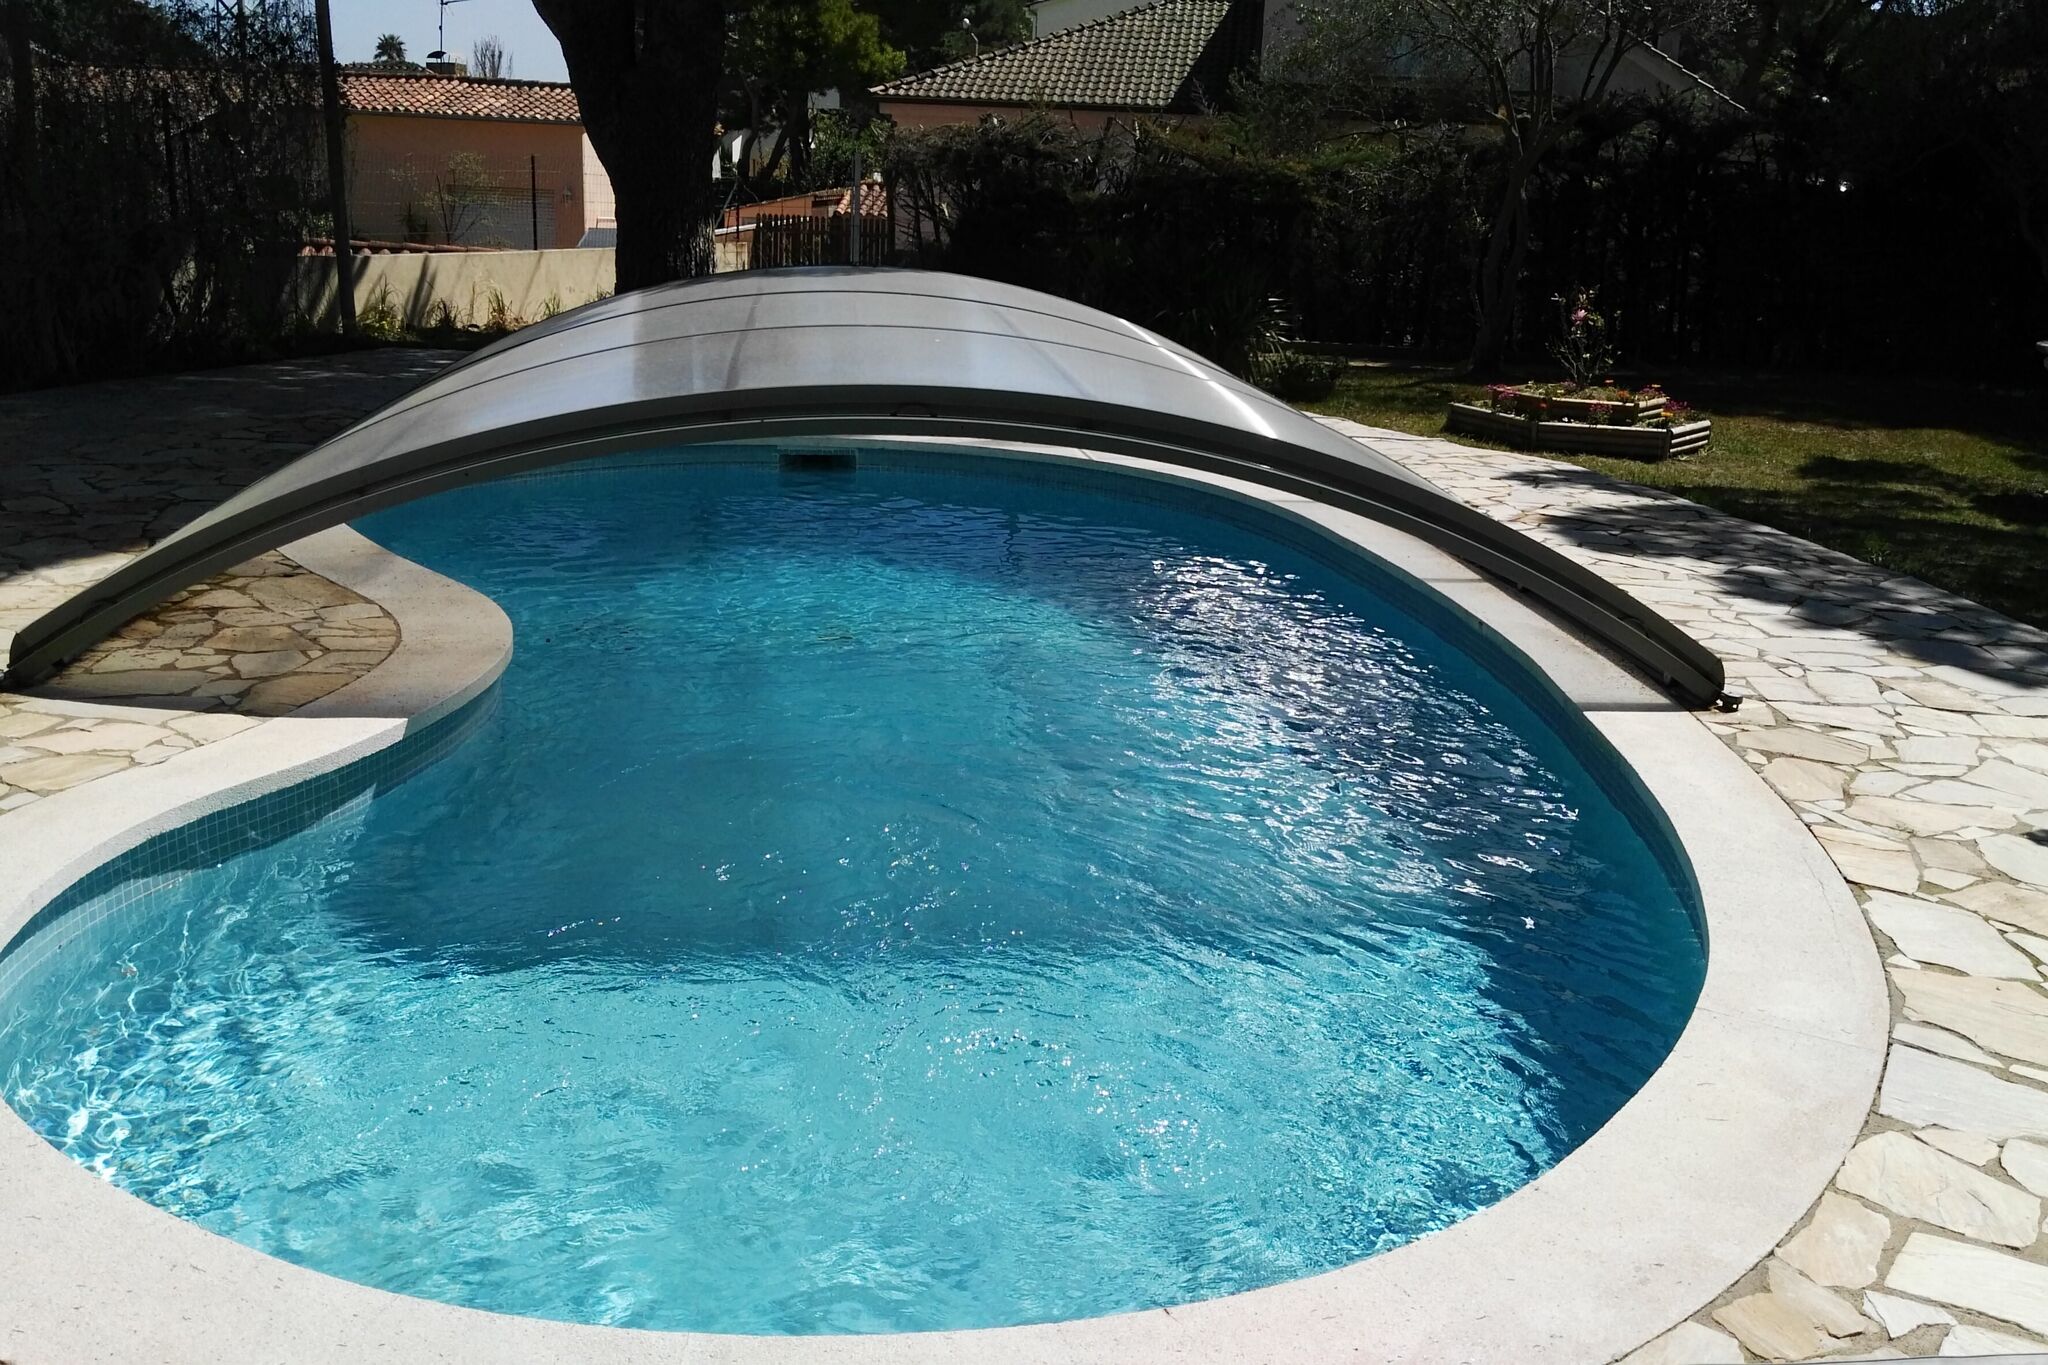 Maison de vacances à Sant Antoni de Calonge, avec piscine.